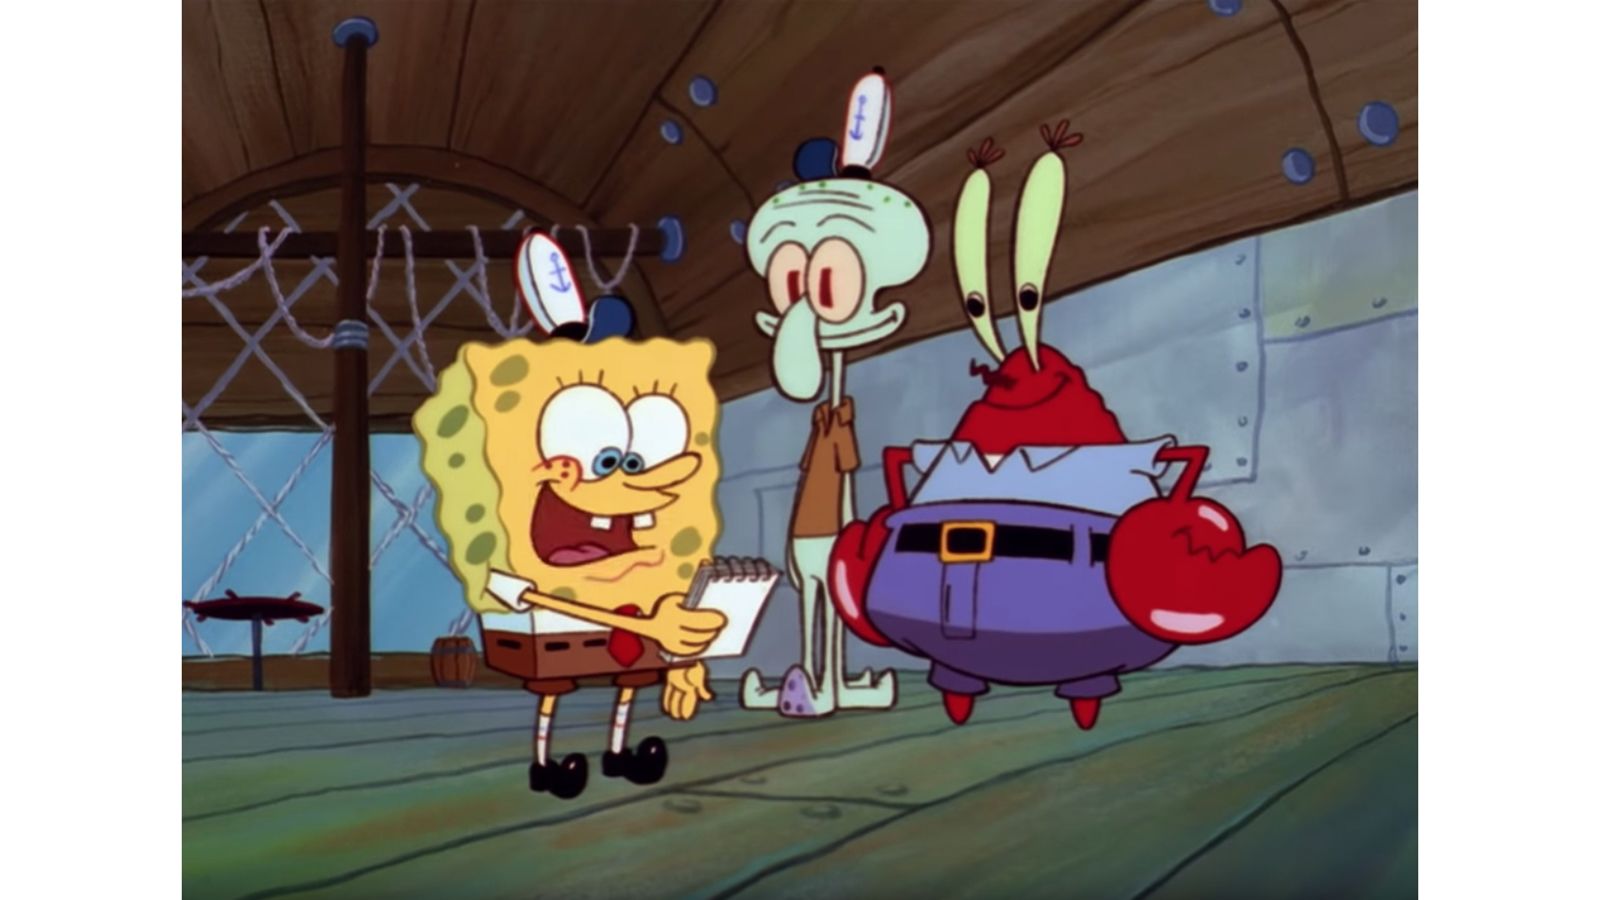 Spongebob, Squidward and Mr. Krabs